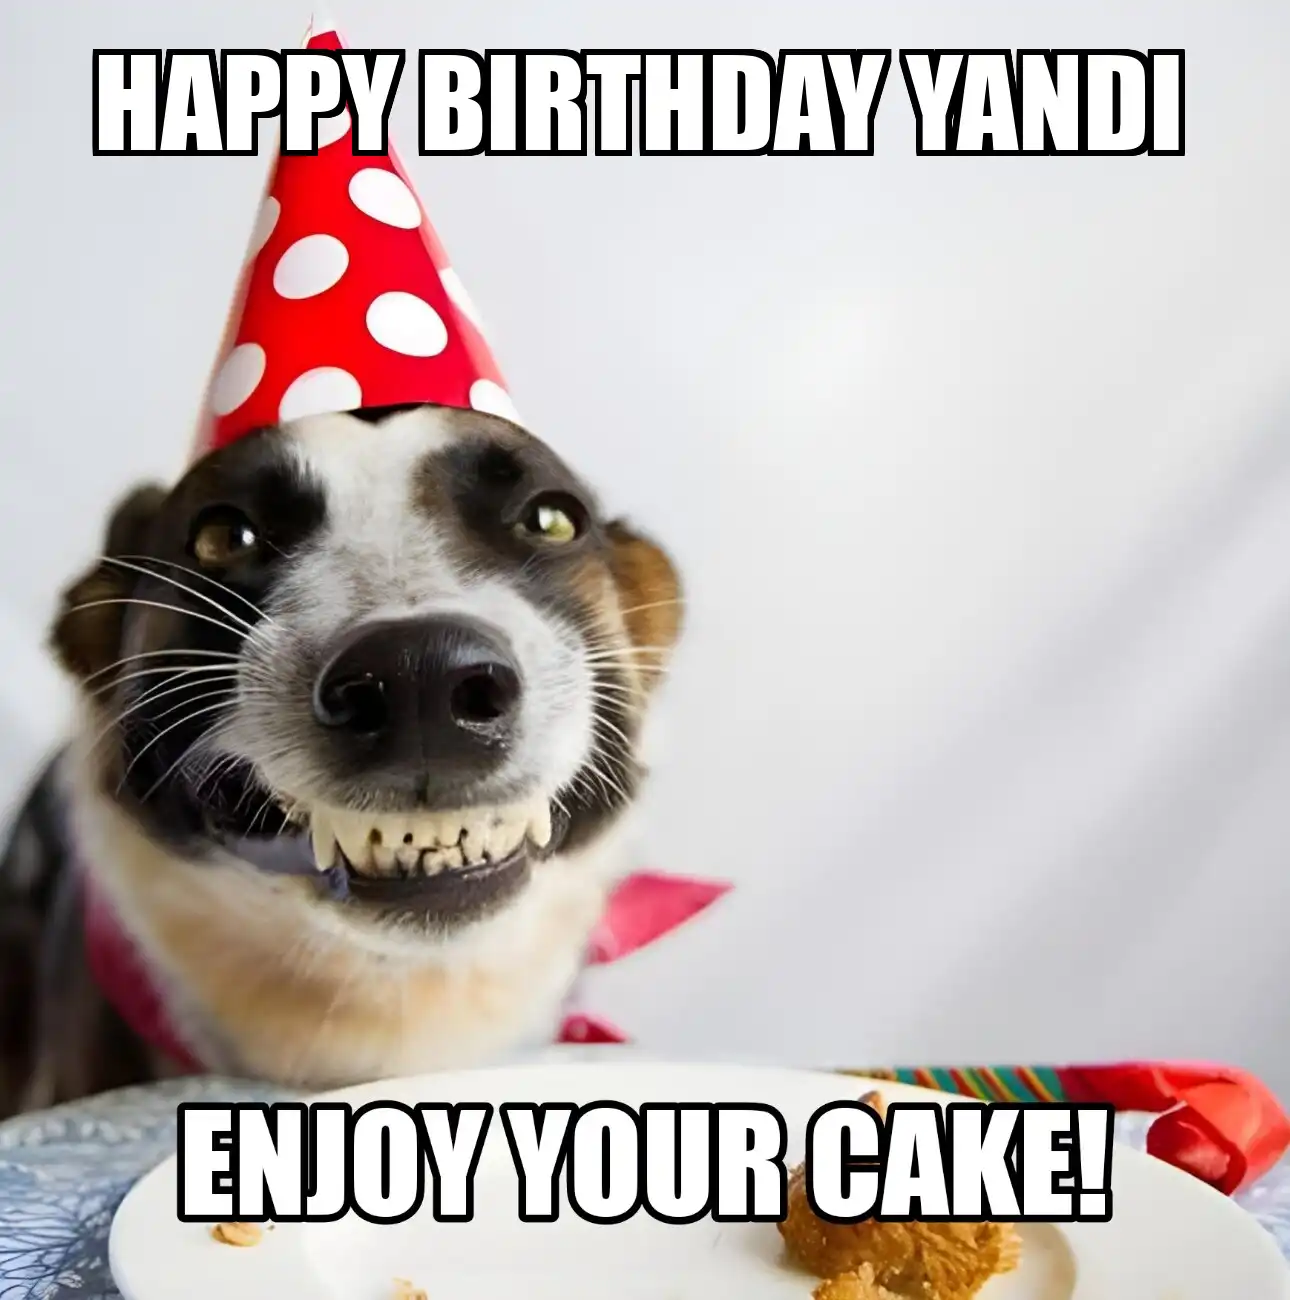 Happy Birthday Yandi Enjoy Your Cake Dog Meme